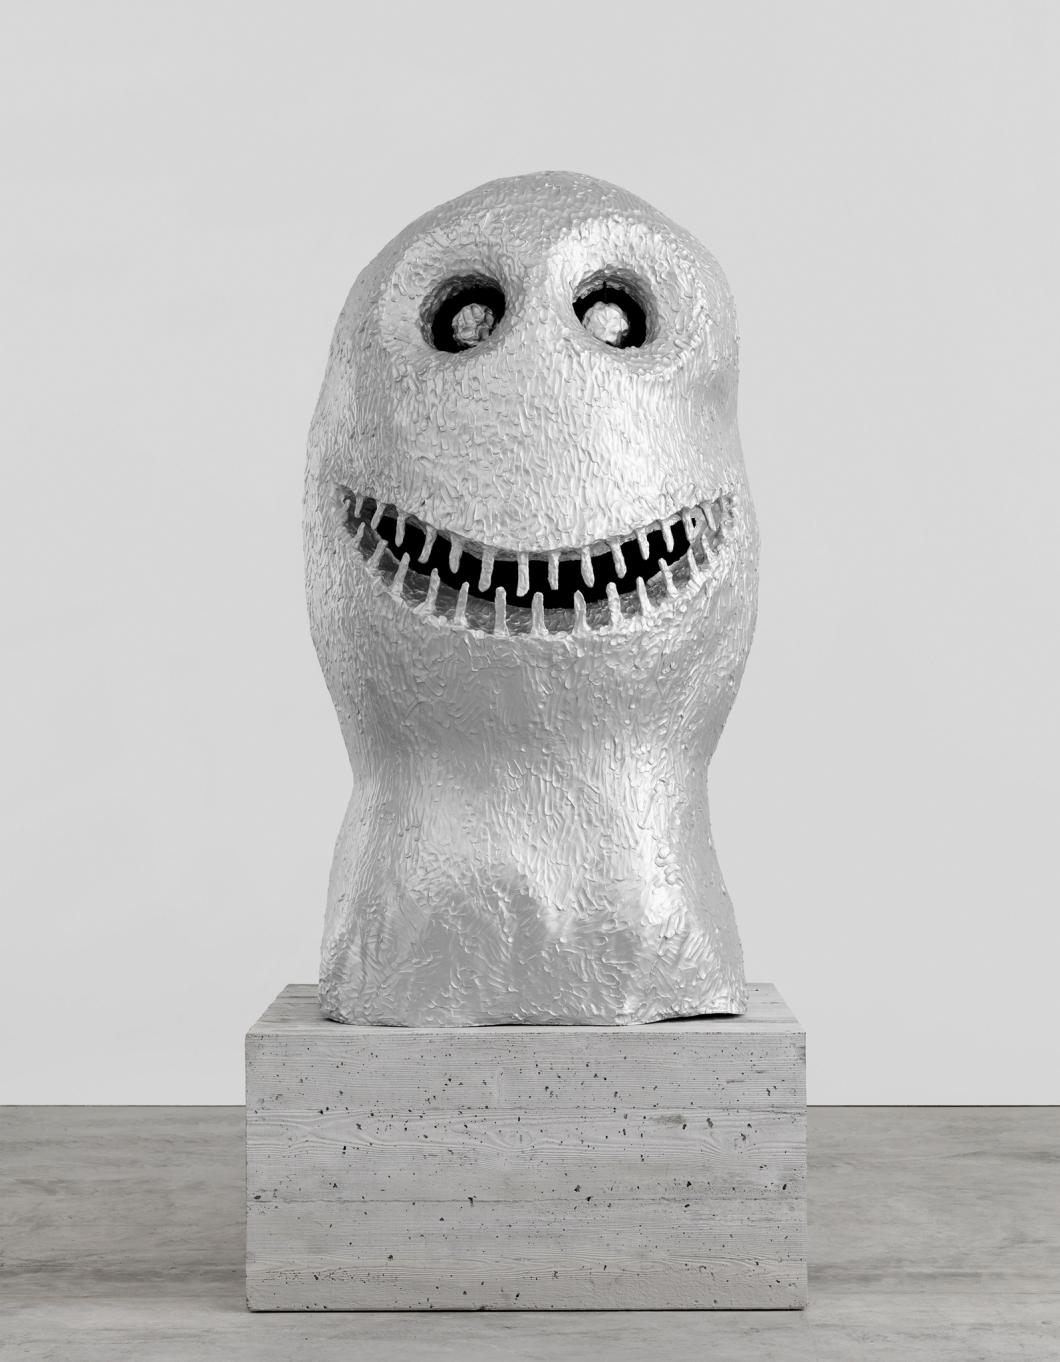 Enlarge image: Eine Skulptur aus Aluminium, die wie ein vereinfachter grinsender Kopf aussieht, auf einem Betonsockel